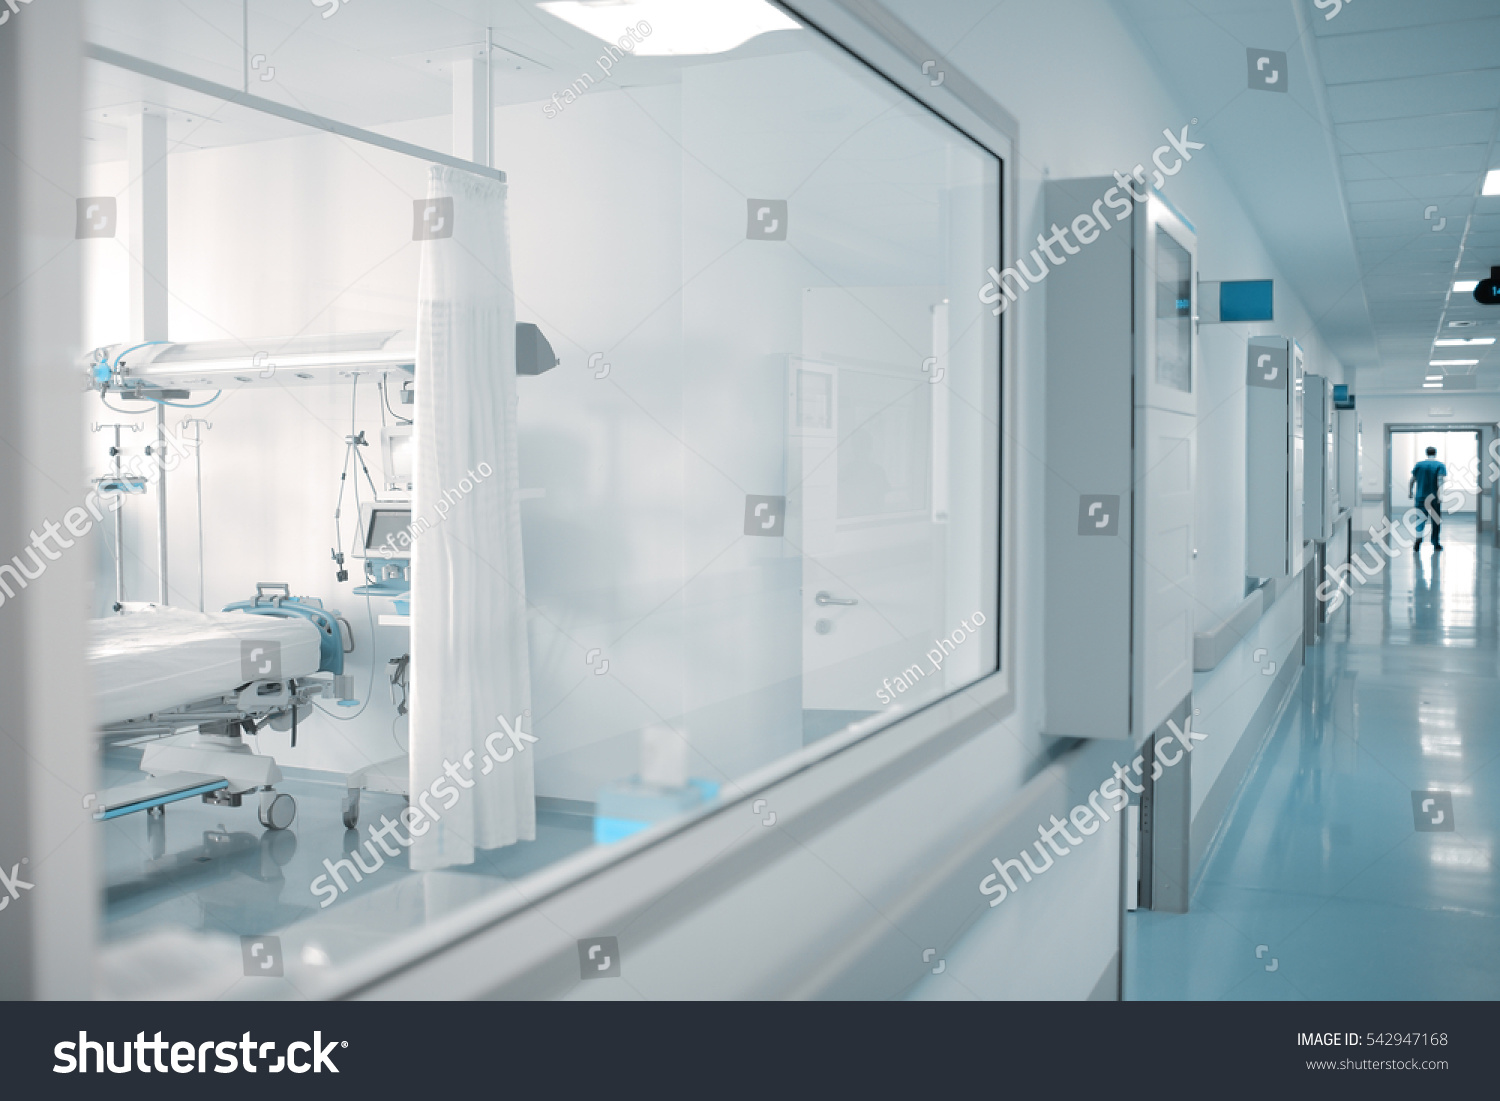 Window in ward of hospital corridor. #542947168